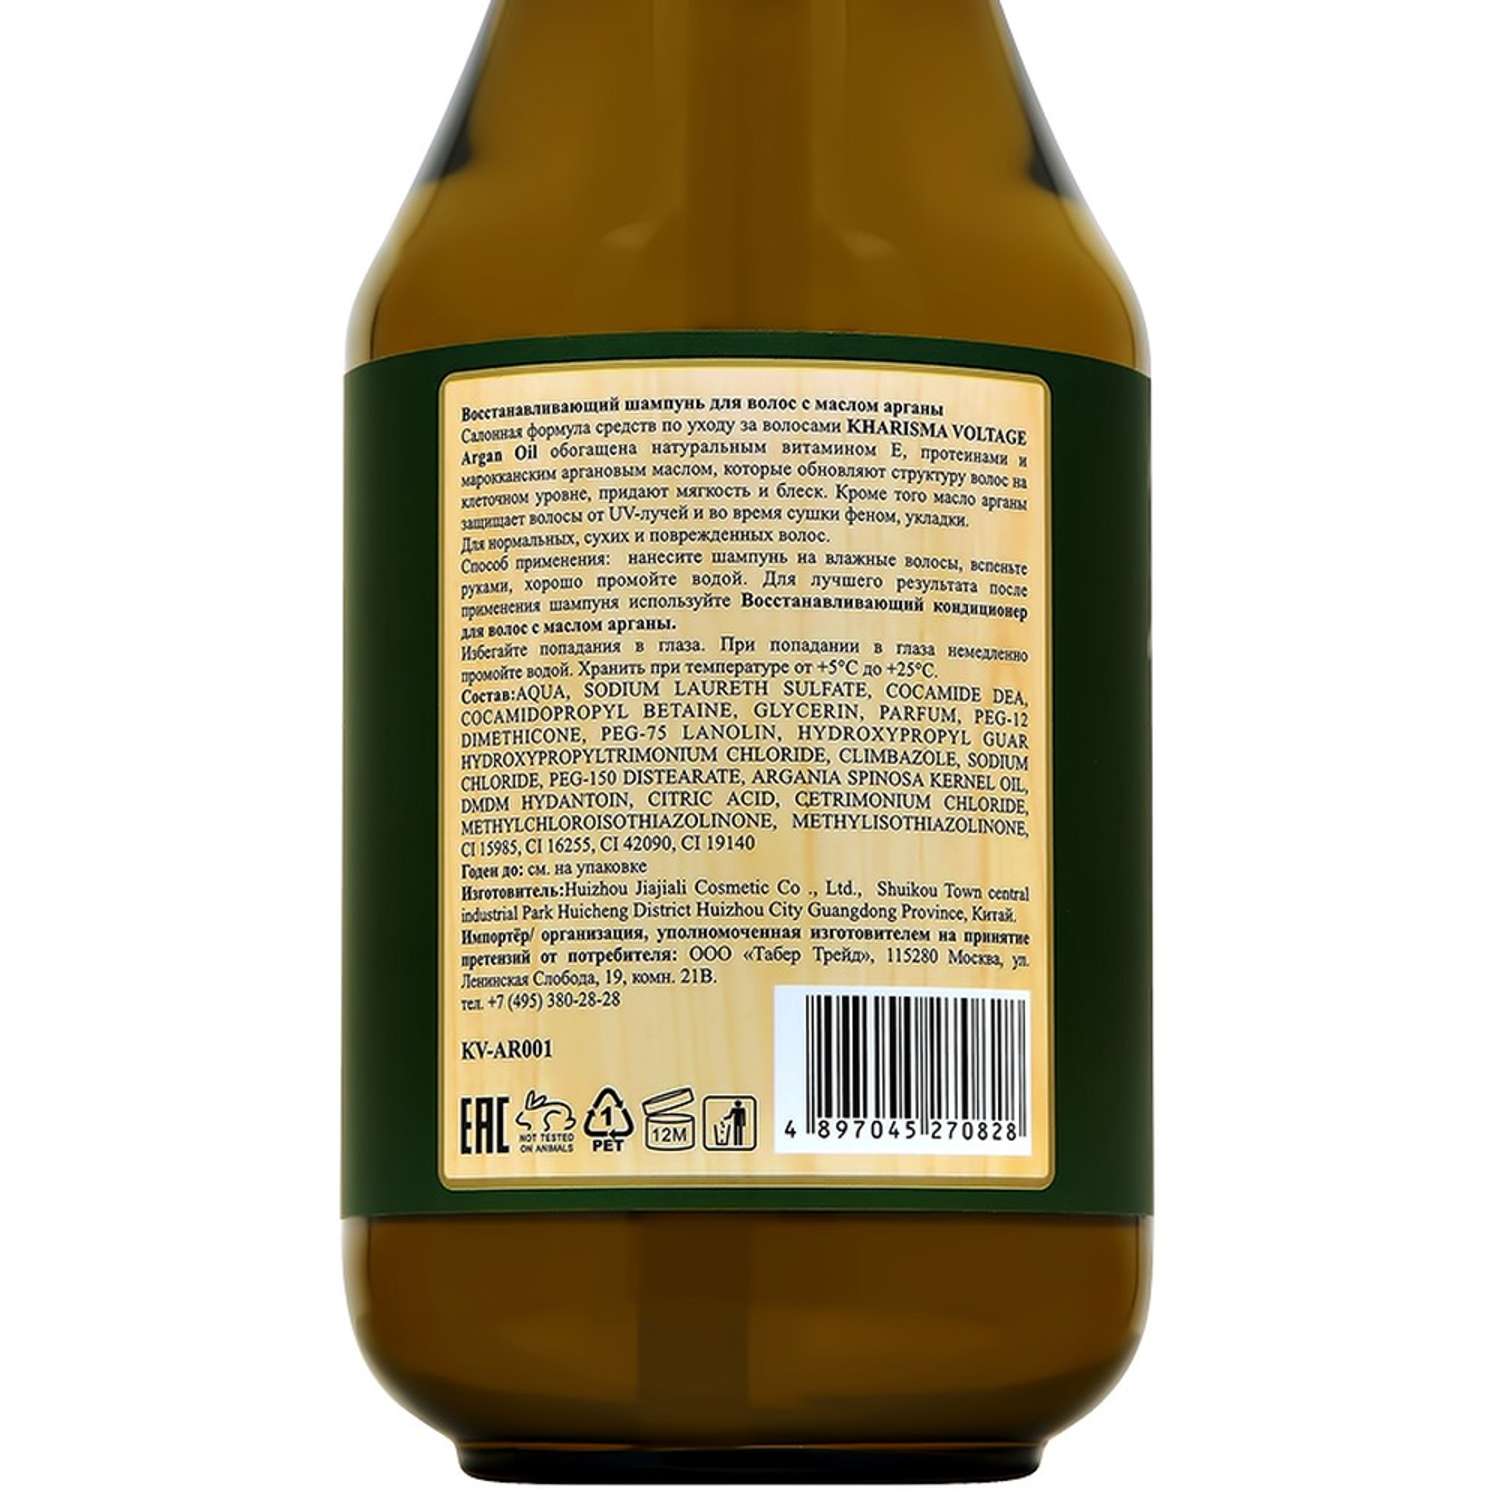 Шампунь Kharisma Voltage Argan oil восстанавливающий с маслом арганы 800 мл - фото 6